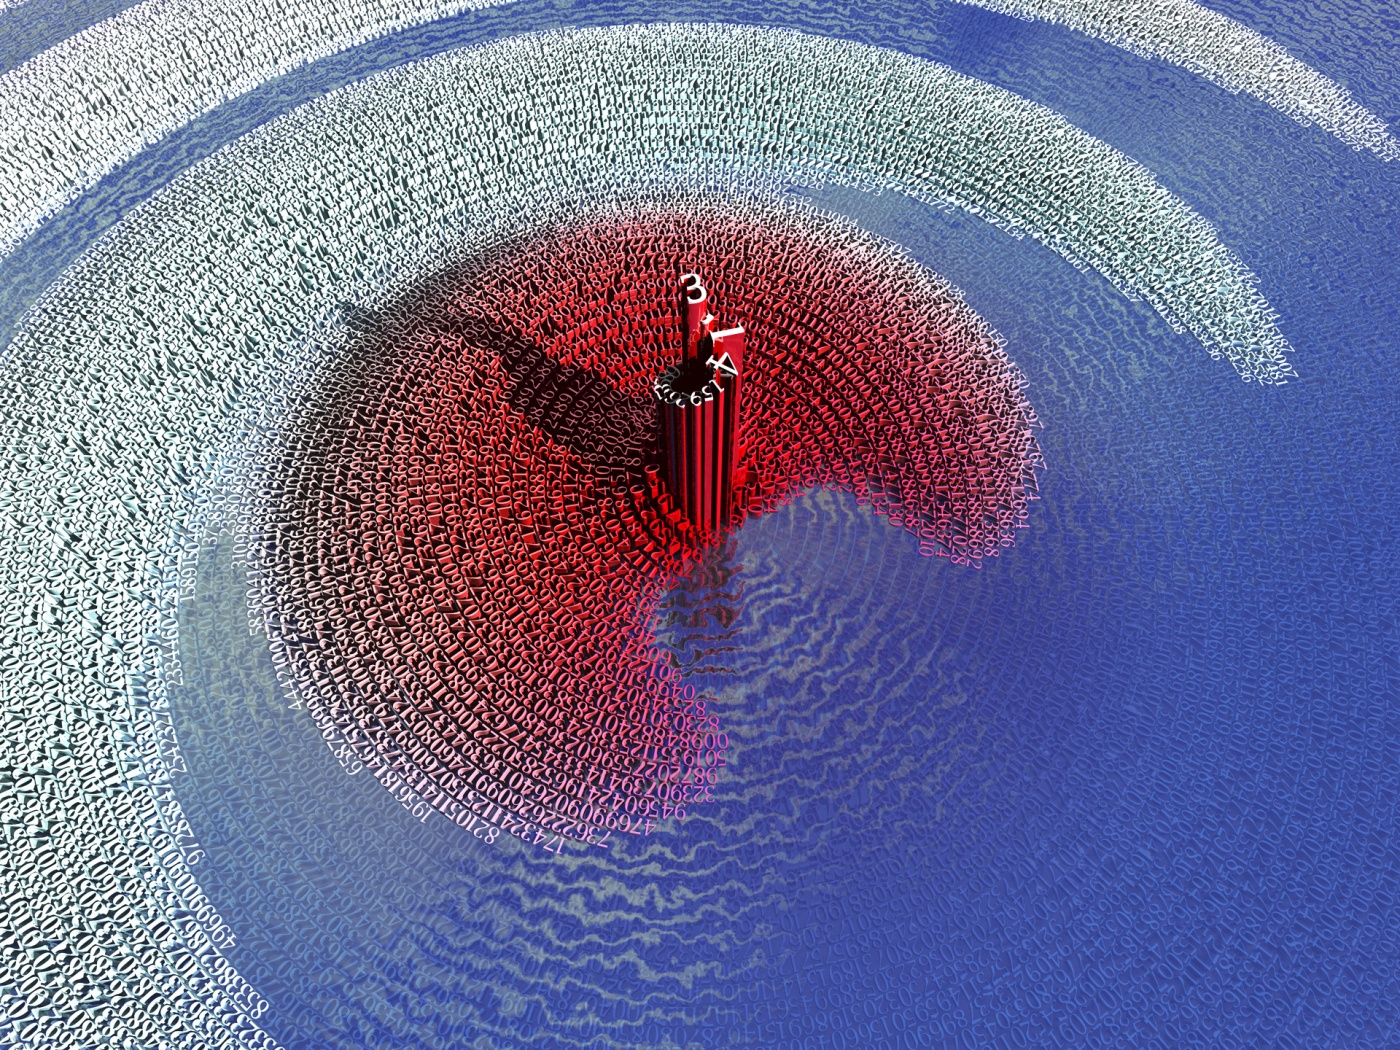 fond d'écran de réchauffement climatique,l'eau,rouge,bleu,cercle,illustration